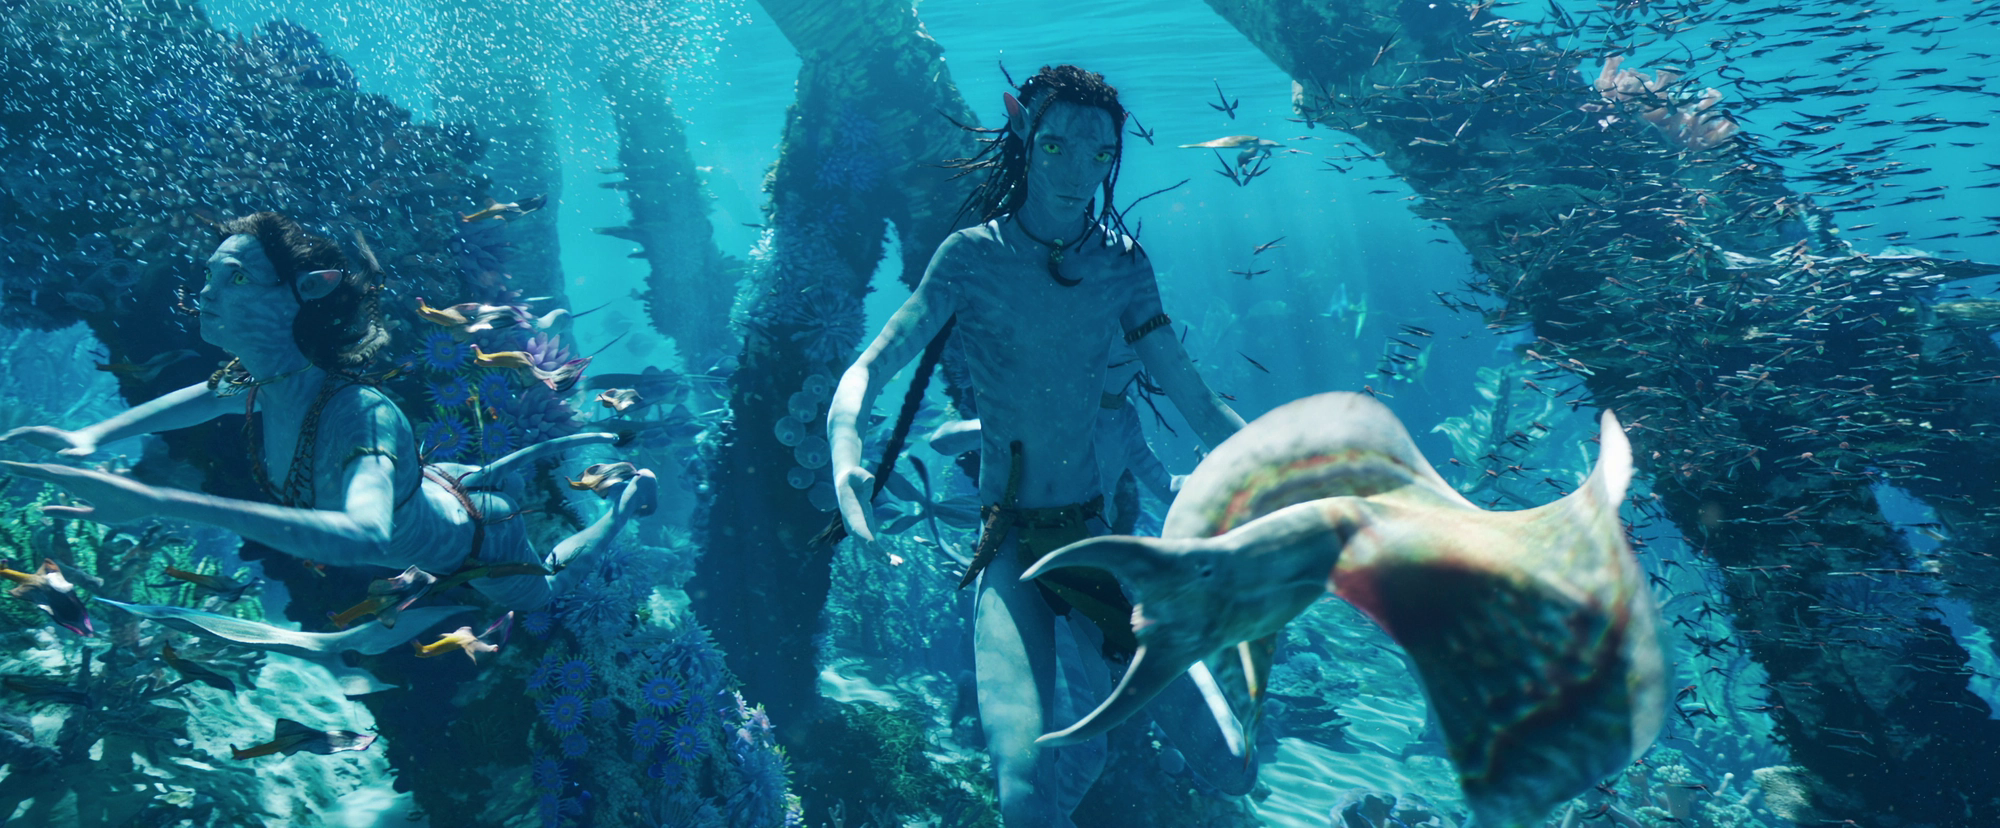 Avatar: The Way Of Water mới đích thực là kỳ quan của thế giới chứ không chỉ là phim ảnh - Ảnh 10.